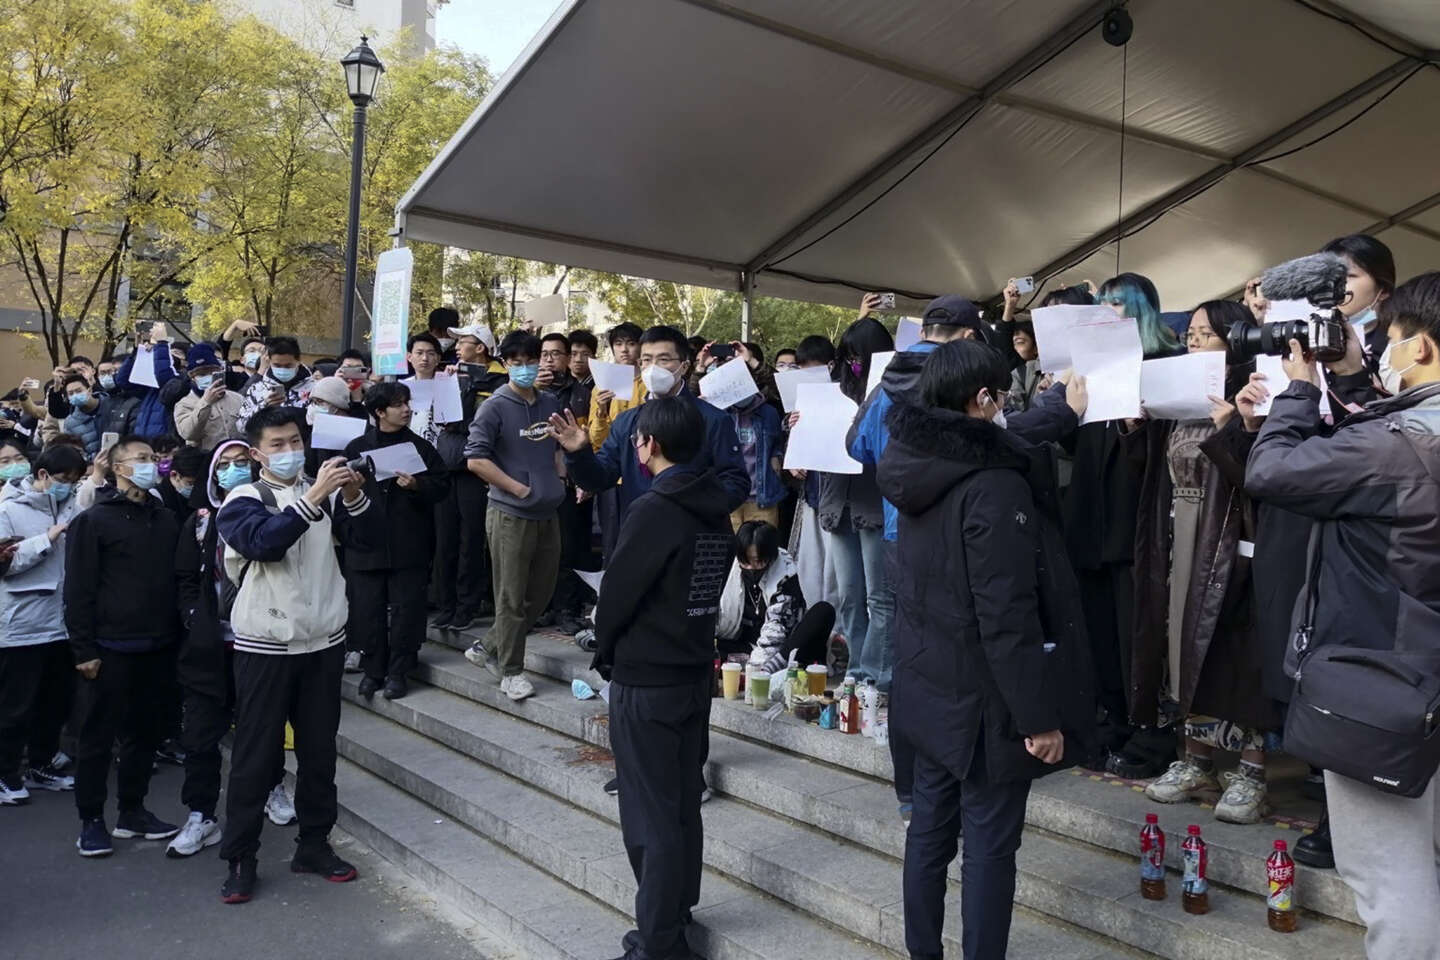 Manifestations en Chine : des étudiants autorisés à rentrer chez eux pour éviter de nouveaux rassemblements